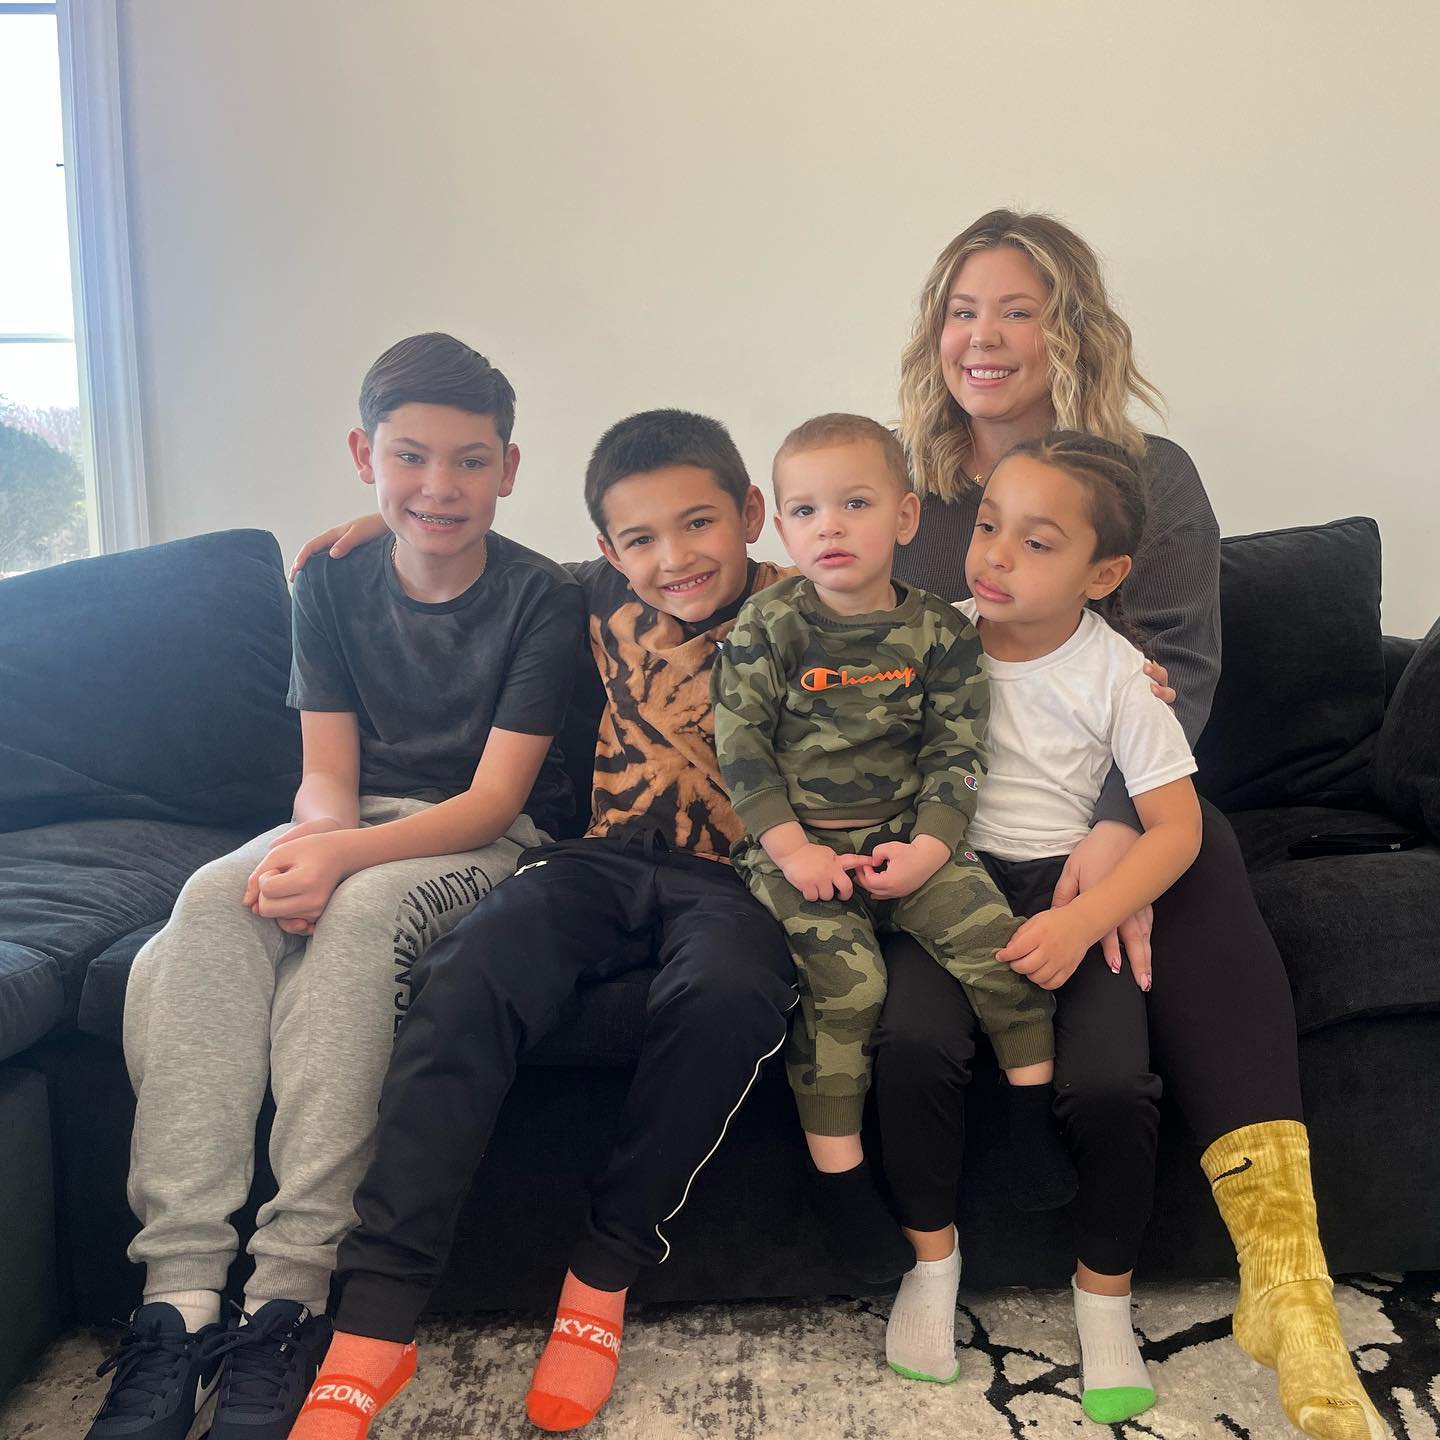 Kailyn mit ihren vier ältesten Söhnen: Isaac, Lincoln, Lux und Creed